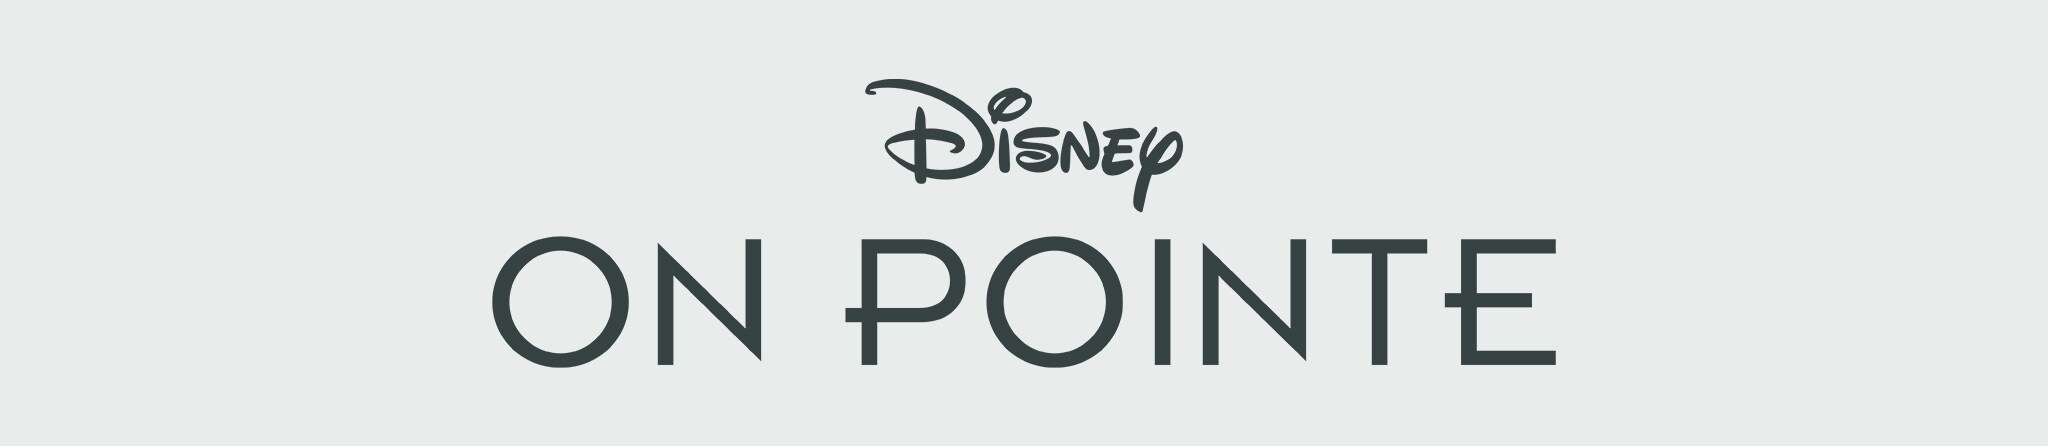 On Pointe Disney Originals